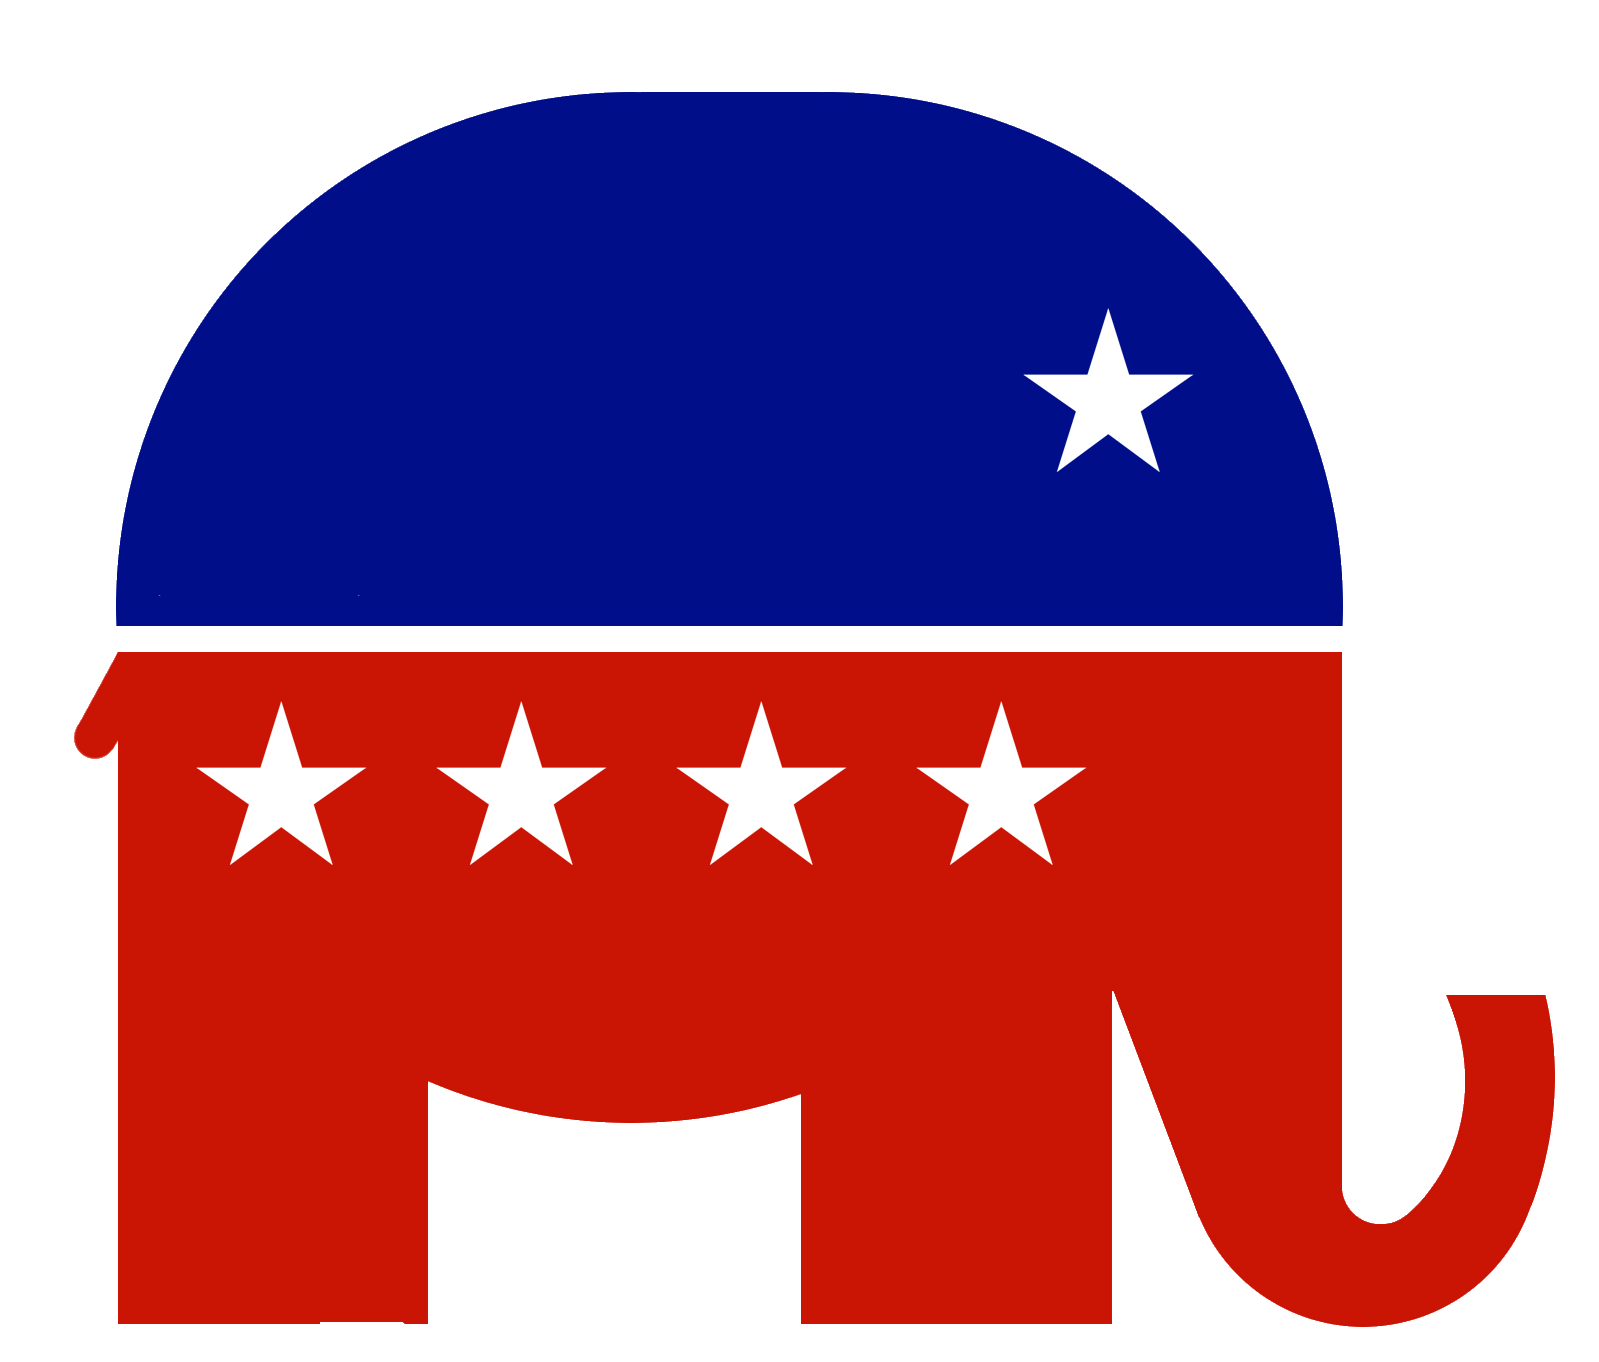 Республиканская партия идеология. Республиканская партия США символ партии. Республиканская партия США 1854. Символ партии республиканцев в США. Консервативная партия США.